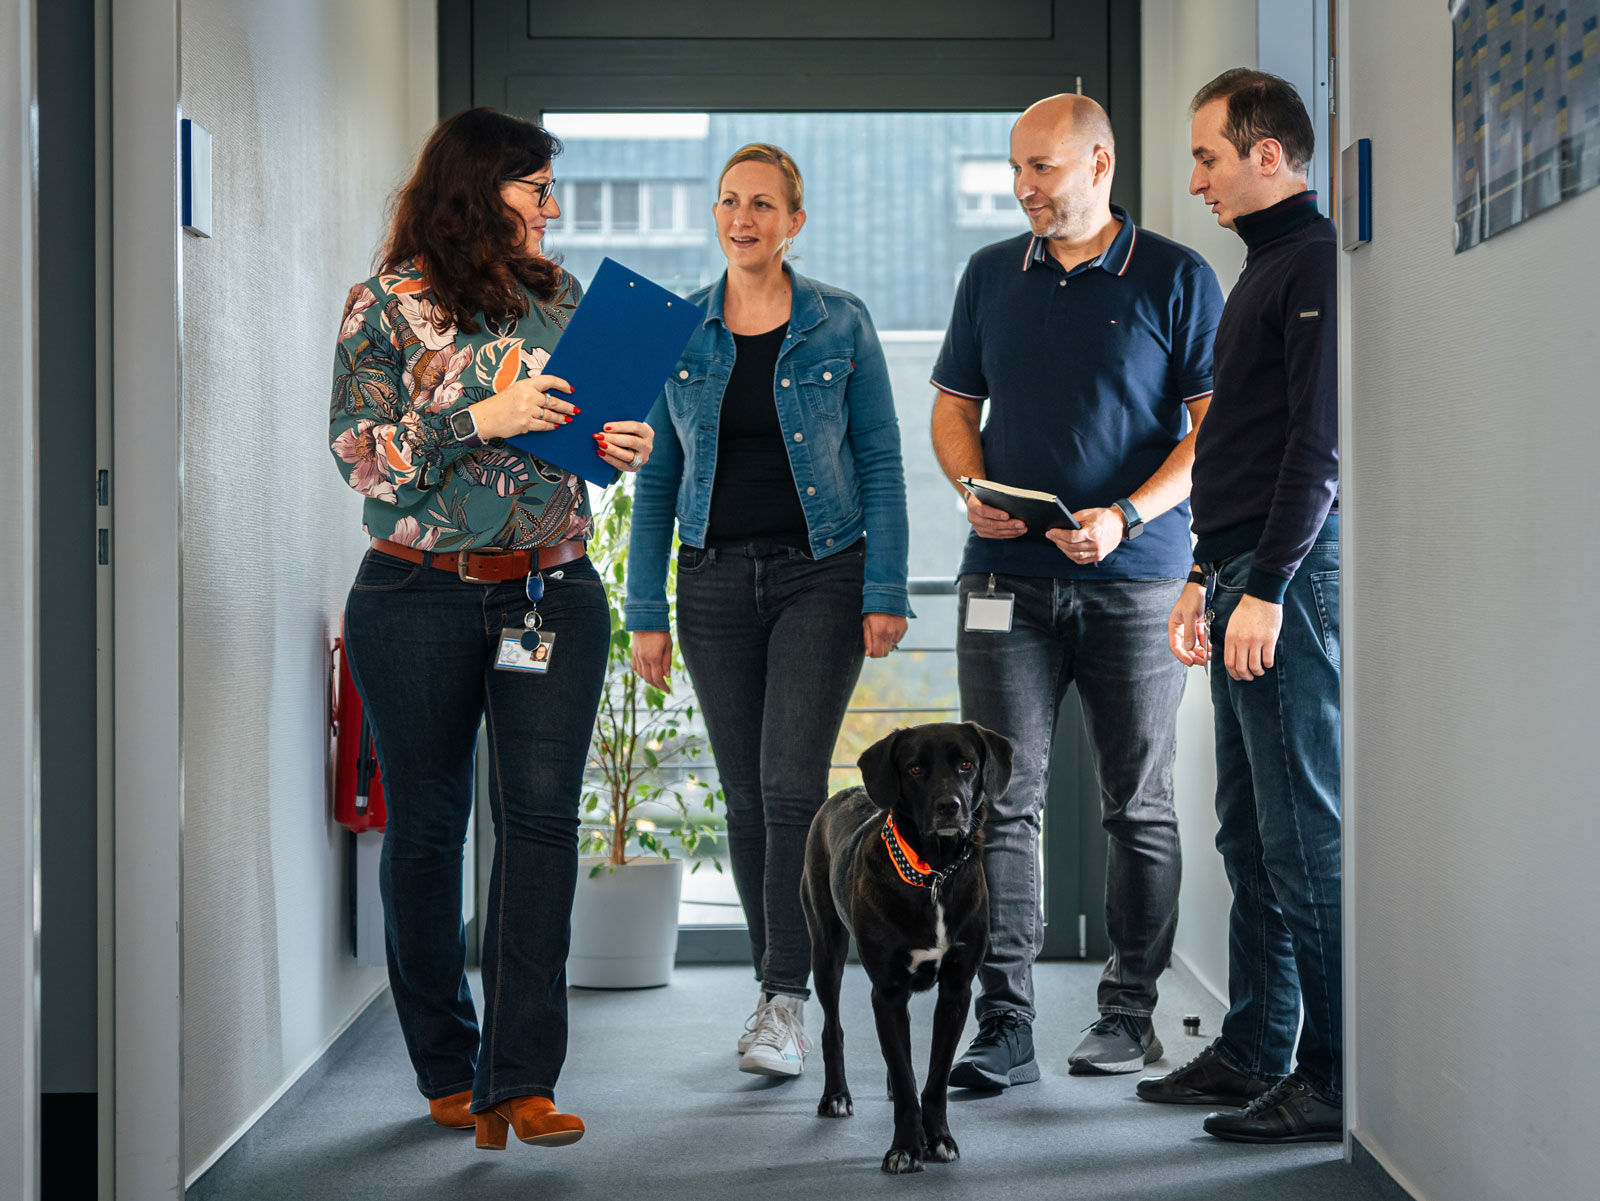 Mitarbeitende laufen gemeinsam mit dem Bürohund über einen Flur des Büros